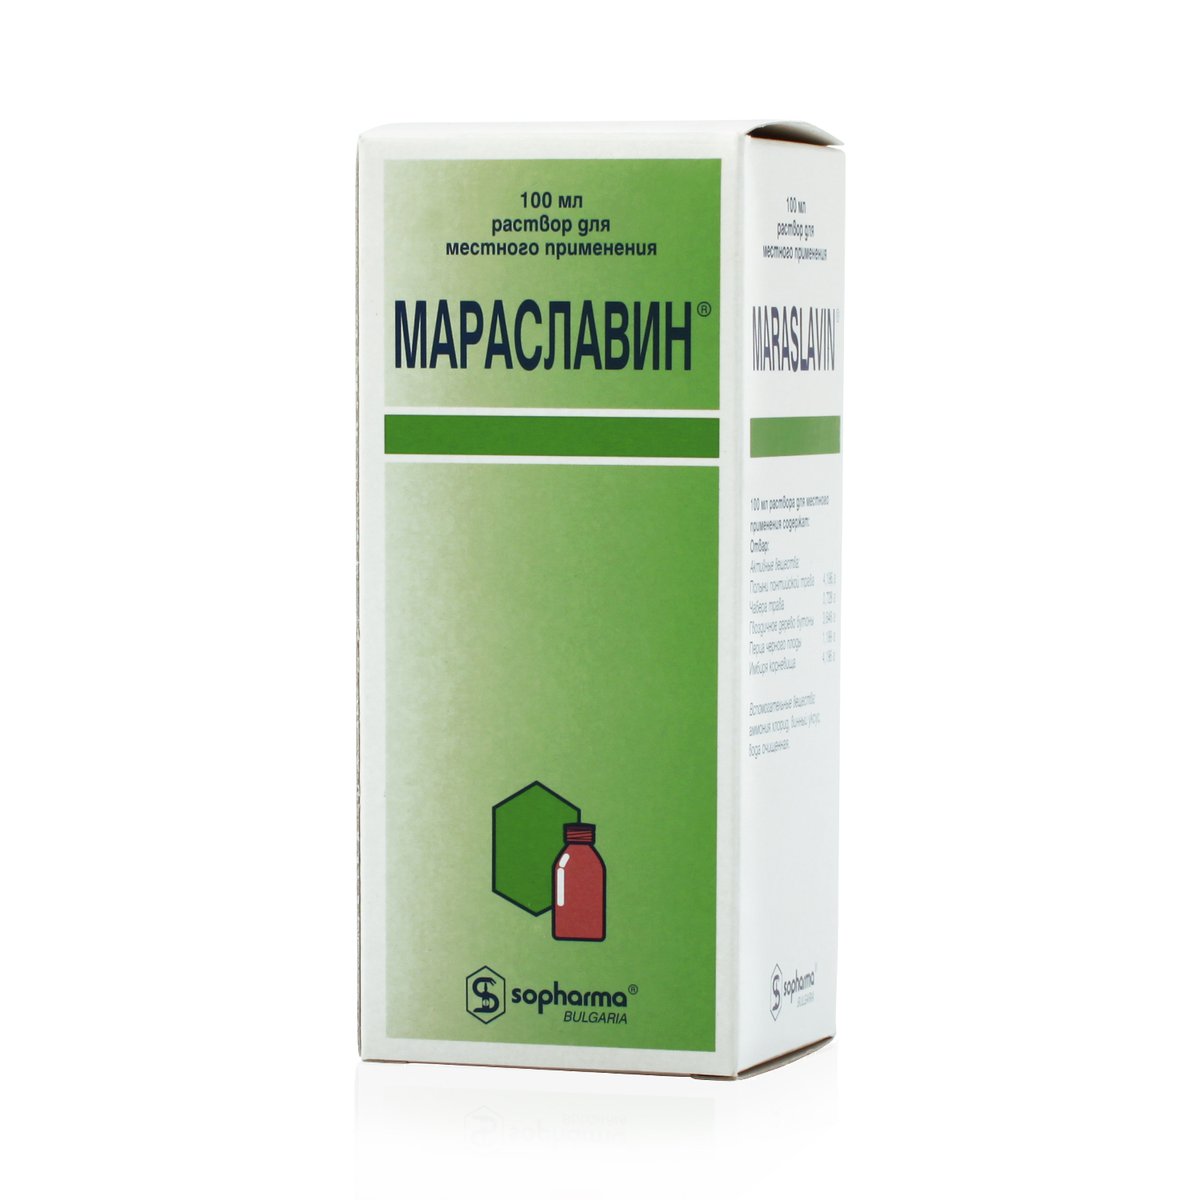 Мараславин (раствор, 100 мл, для местного применения) - цена,  .